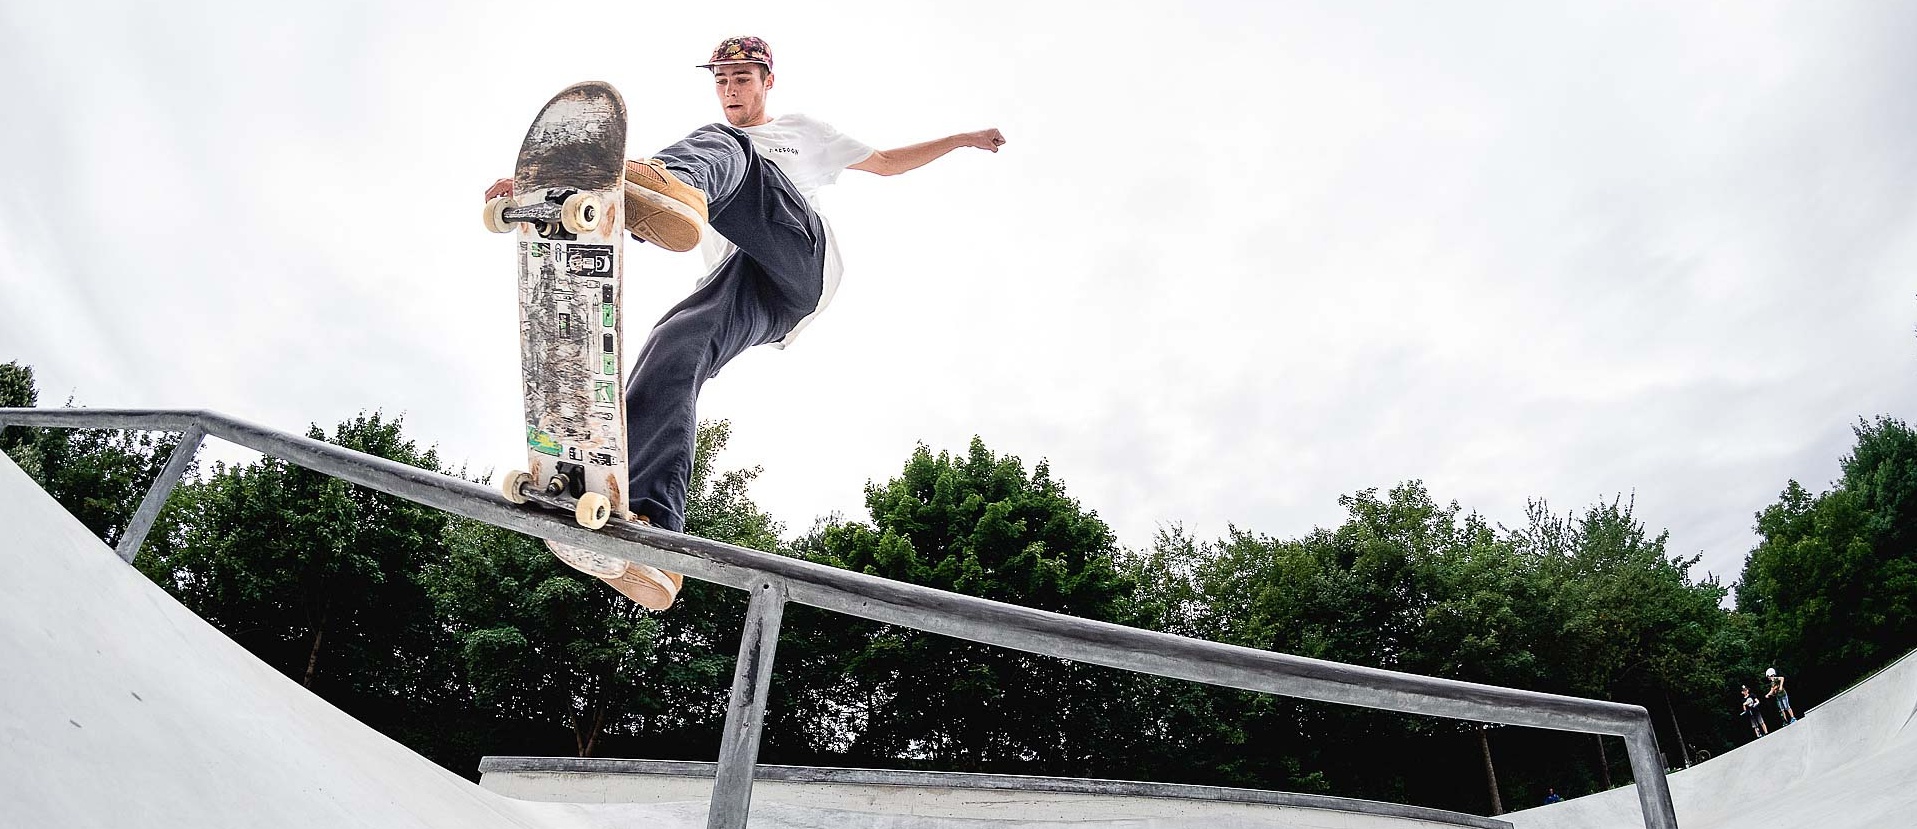 Skateboarder macht Trick auf einem Rail in einem Skatepark